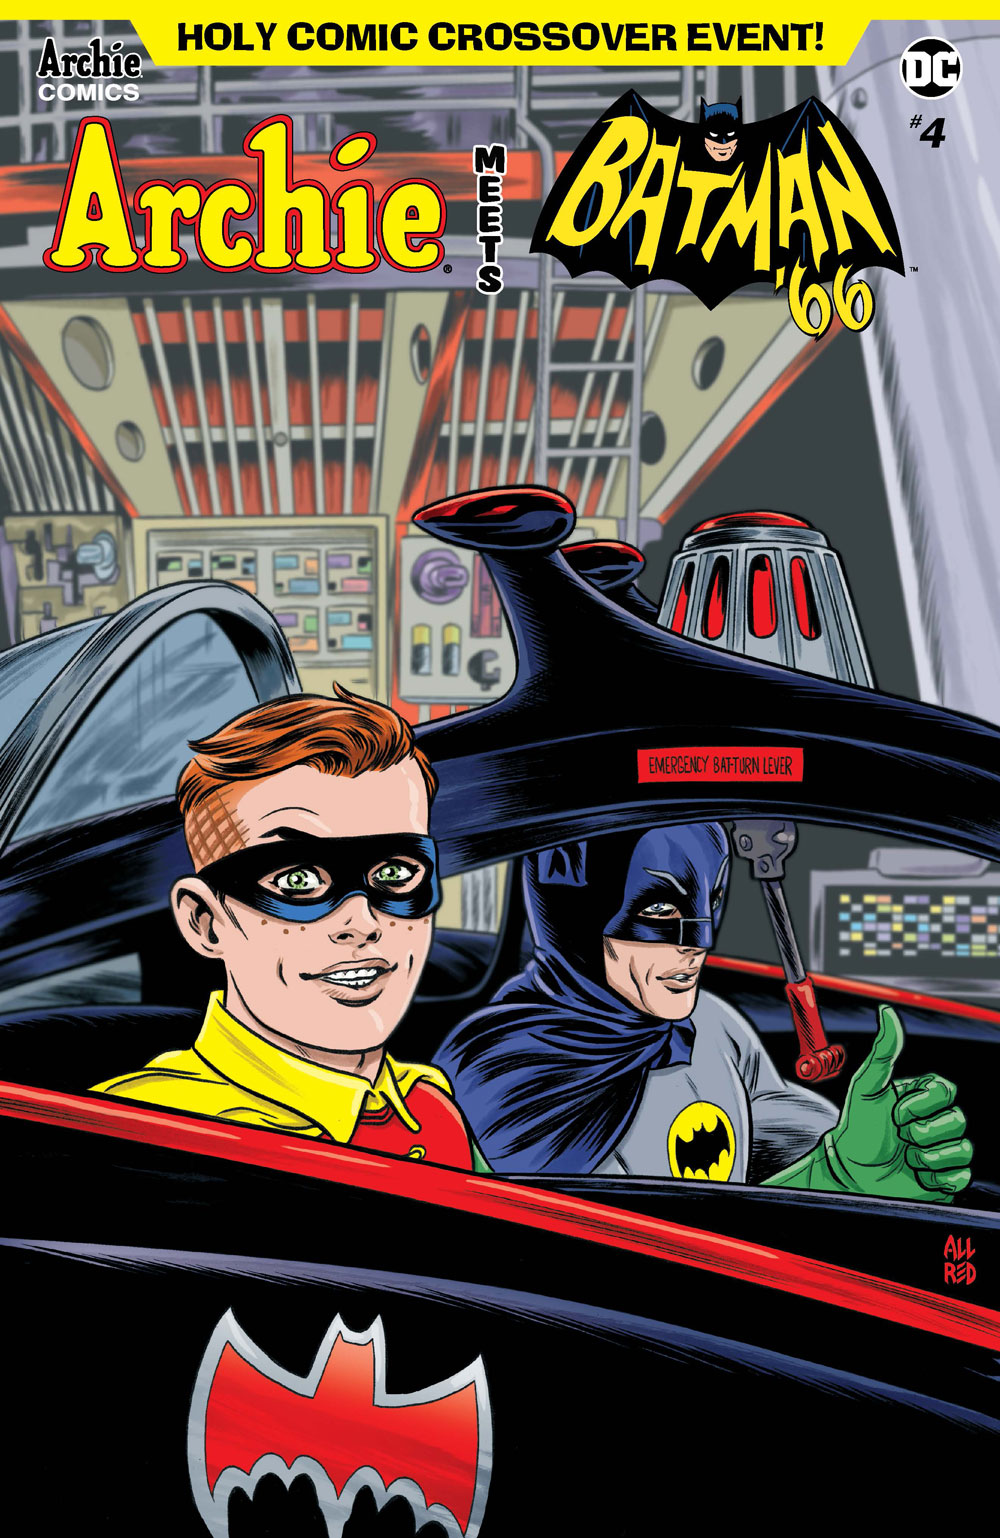 Archie Meets Batman' 66 #4